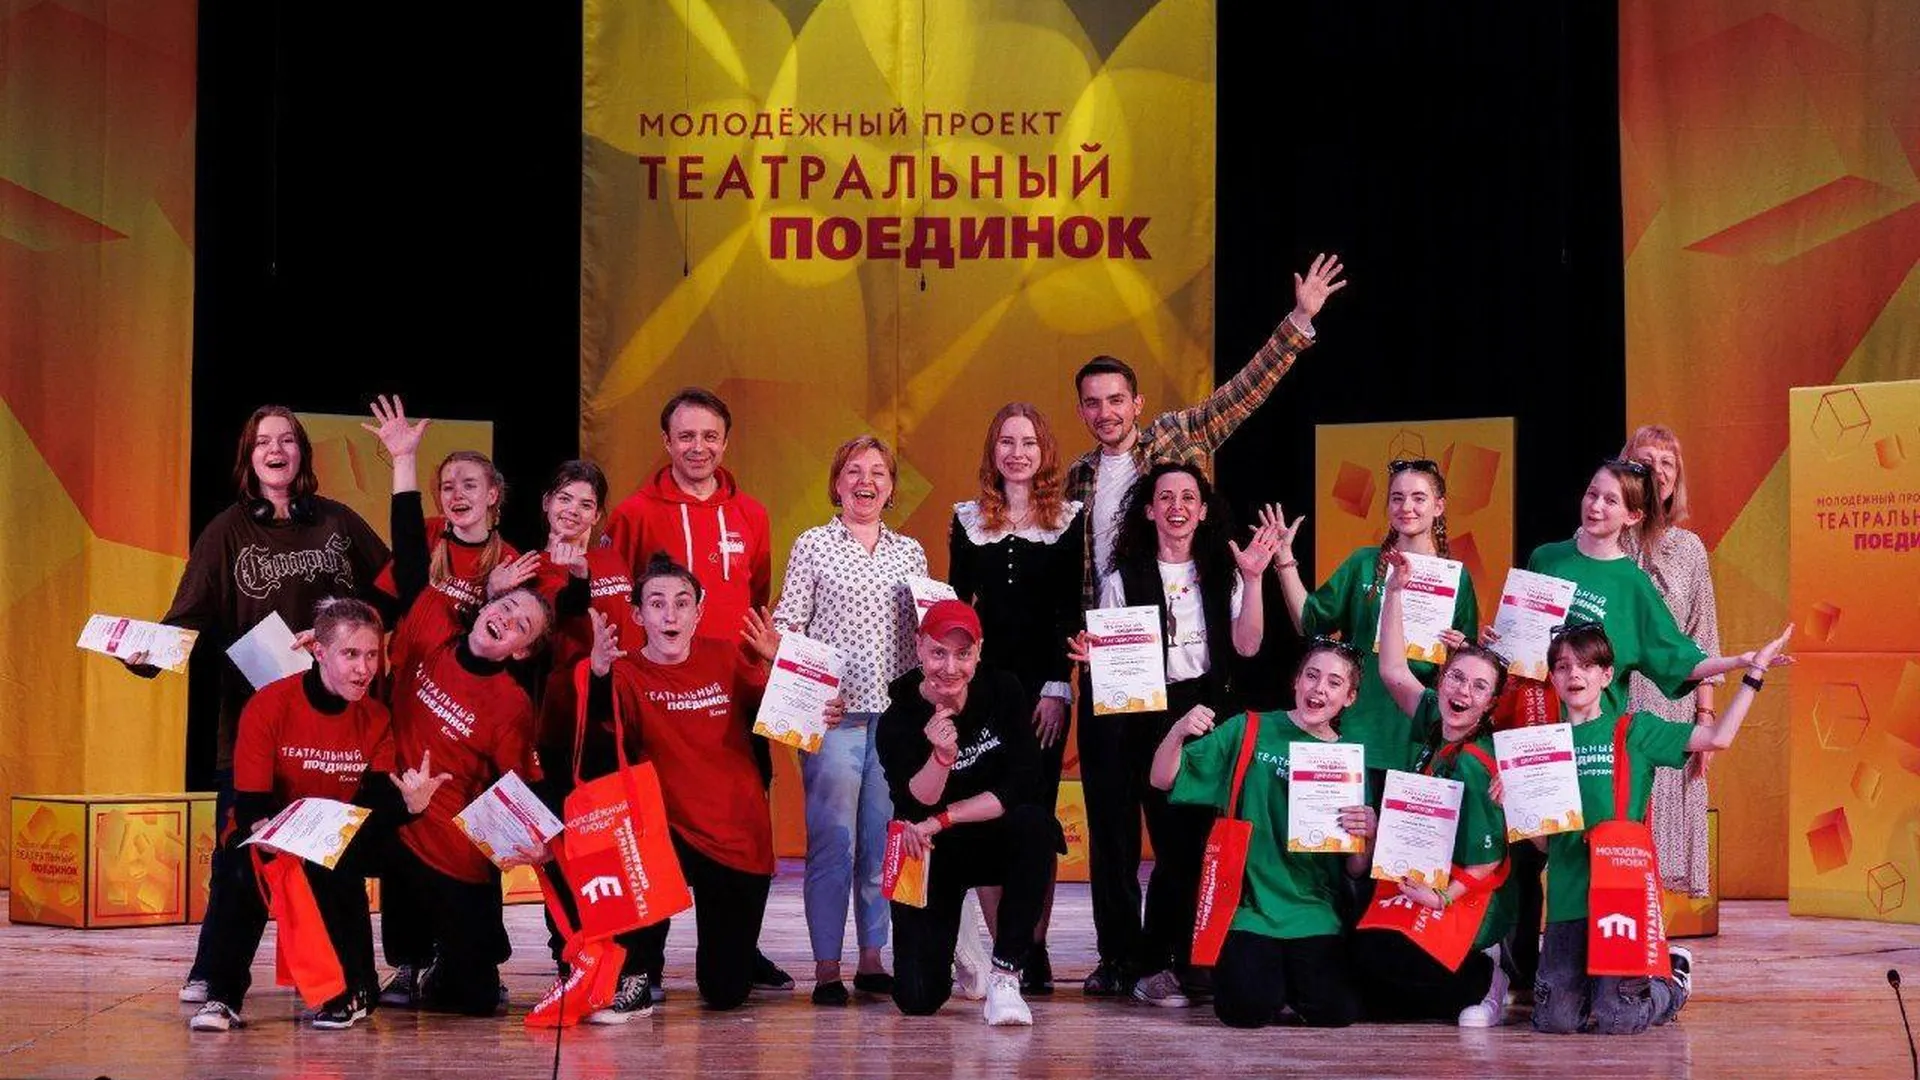 Клинский учебный театр ярко представил округ в Молодежном проекте «Театральный поединок» в Подмосковье